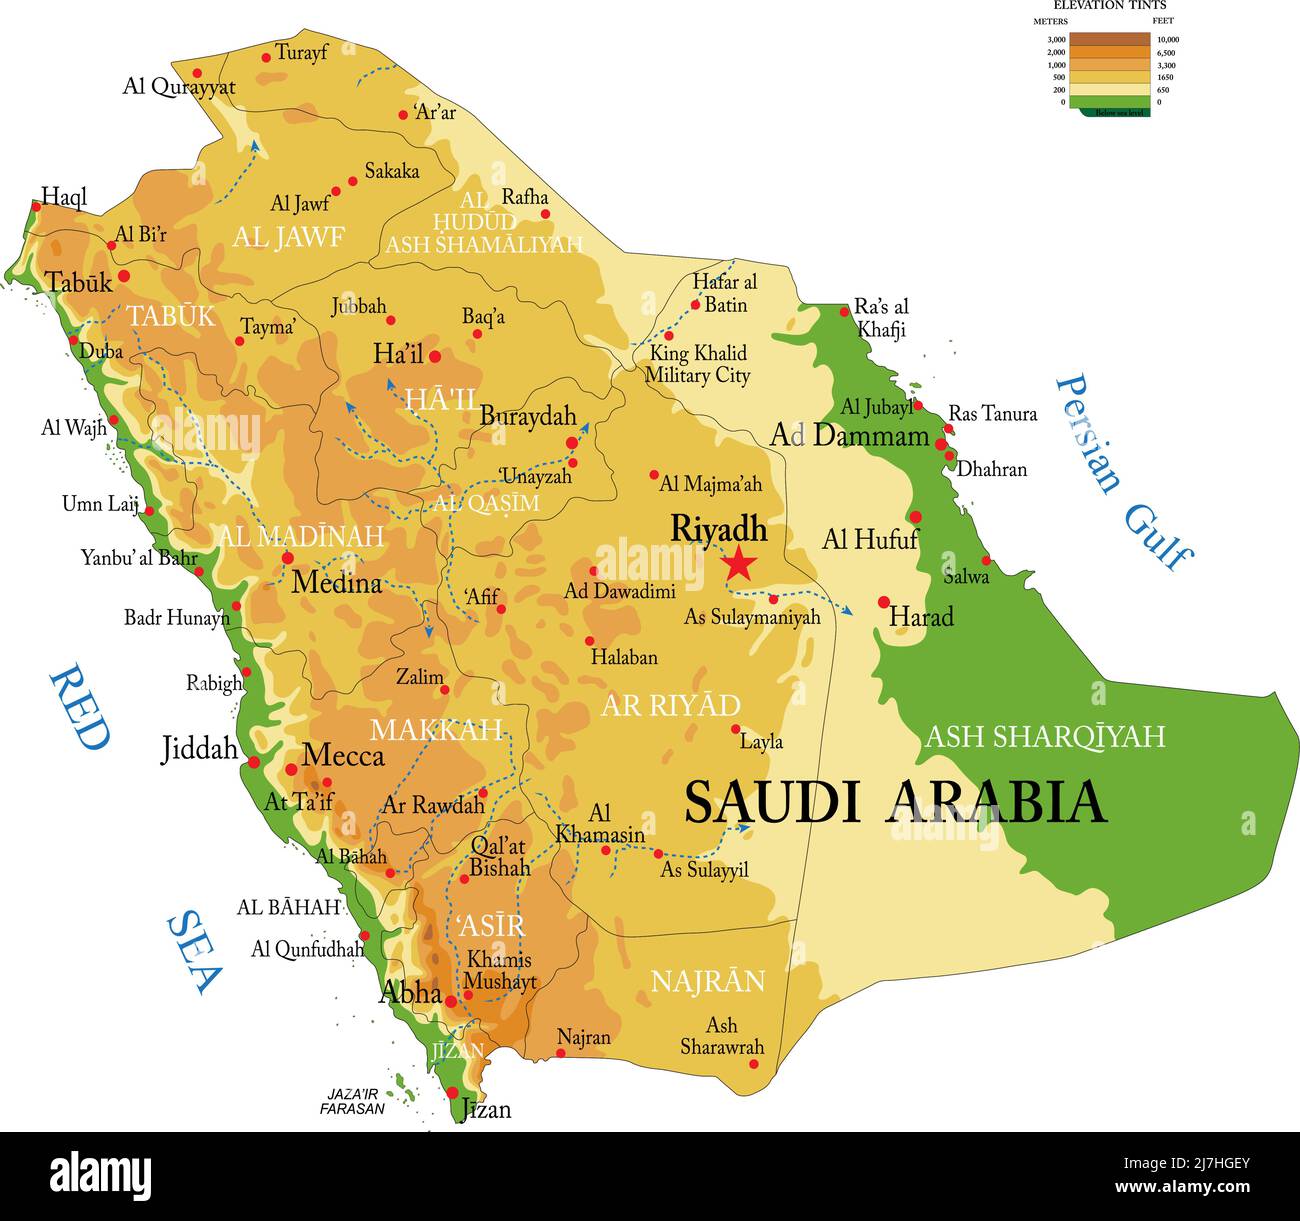 Sehr detaillierte physische Karte von Saudi-Arabien, im Vektorformat, mit allen Reliefformen, Regionen und großen Städten. Stock Vektor